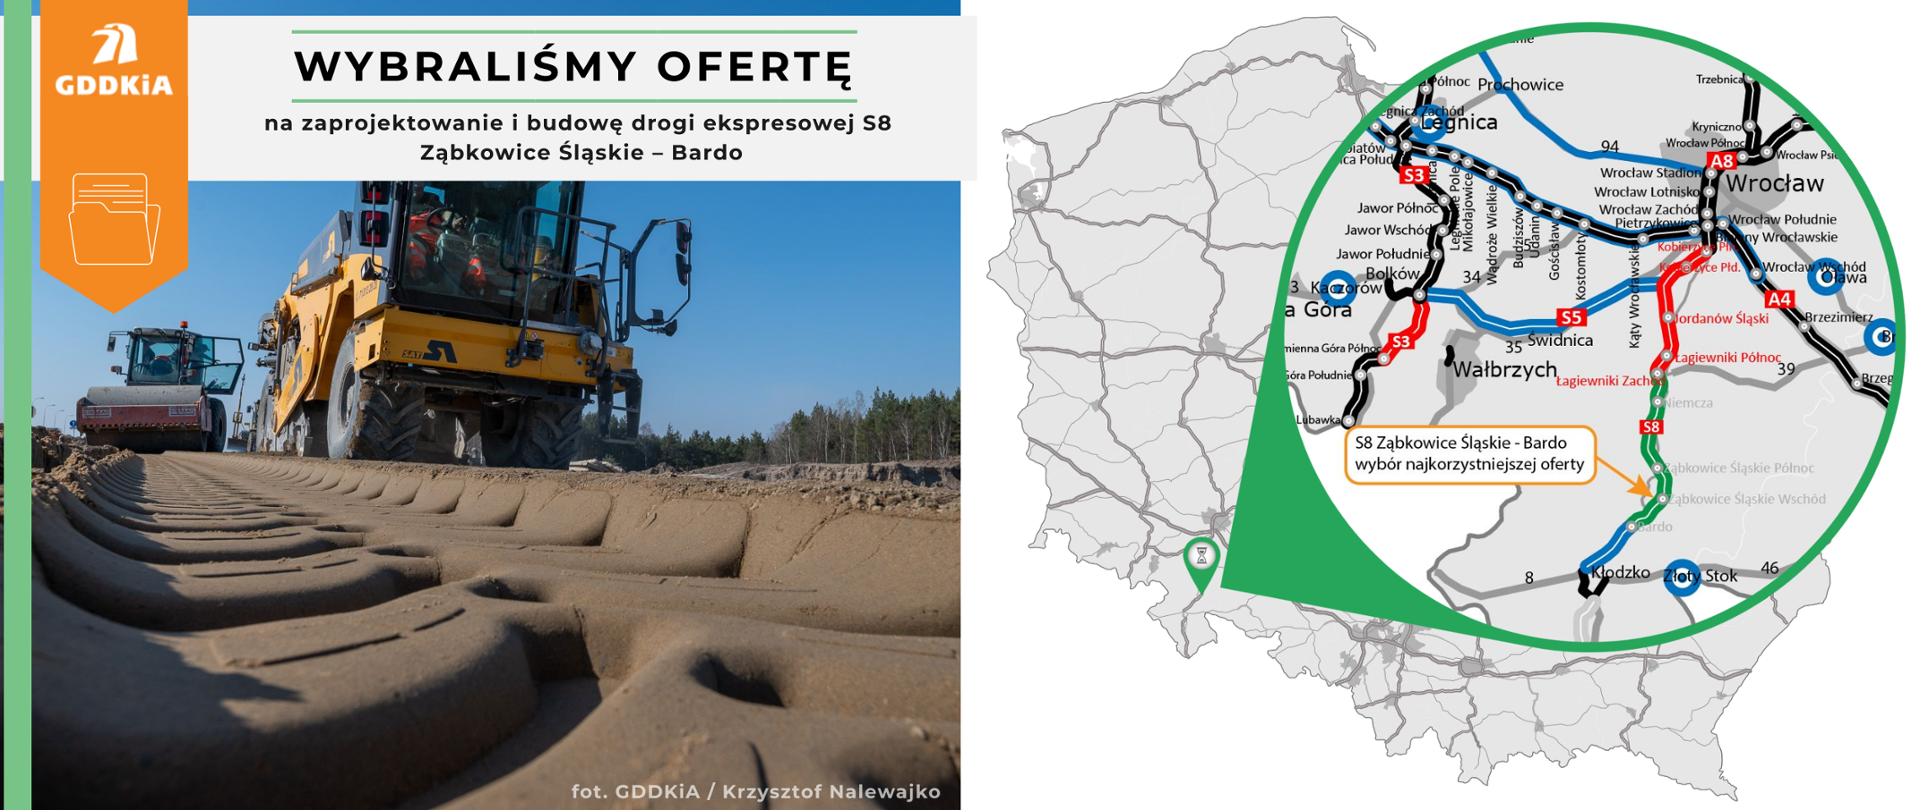 Grafika informująca o wyborze oferty na realizację drogi ekspresowej S8 na odcinku Ząbkowice Śląskie - Bardo. Po prawej mapa Polski z zaznaczonym odcinkiem drogi ekspresowej S8. Po lewej poglądowe zdjęcie robót budowlanych. Ciężki sprzęt budowlany poruszający się po placu budowy. Zdjęcie wykonano z poziomu gruntu. Pokazuje ślad opony w ziemi jaki pozostawił przejeżdżający sprzęt budowlany.